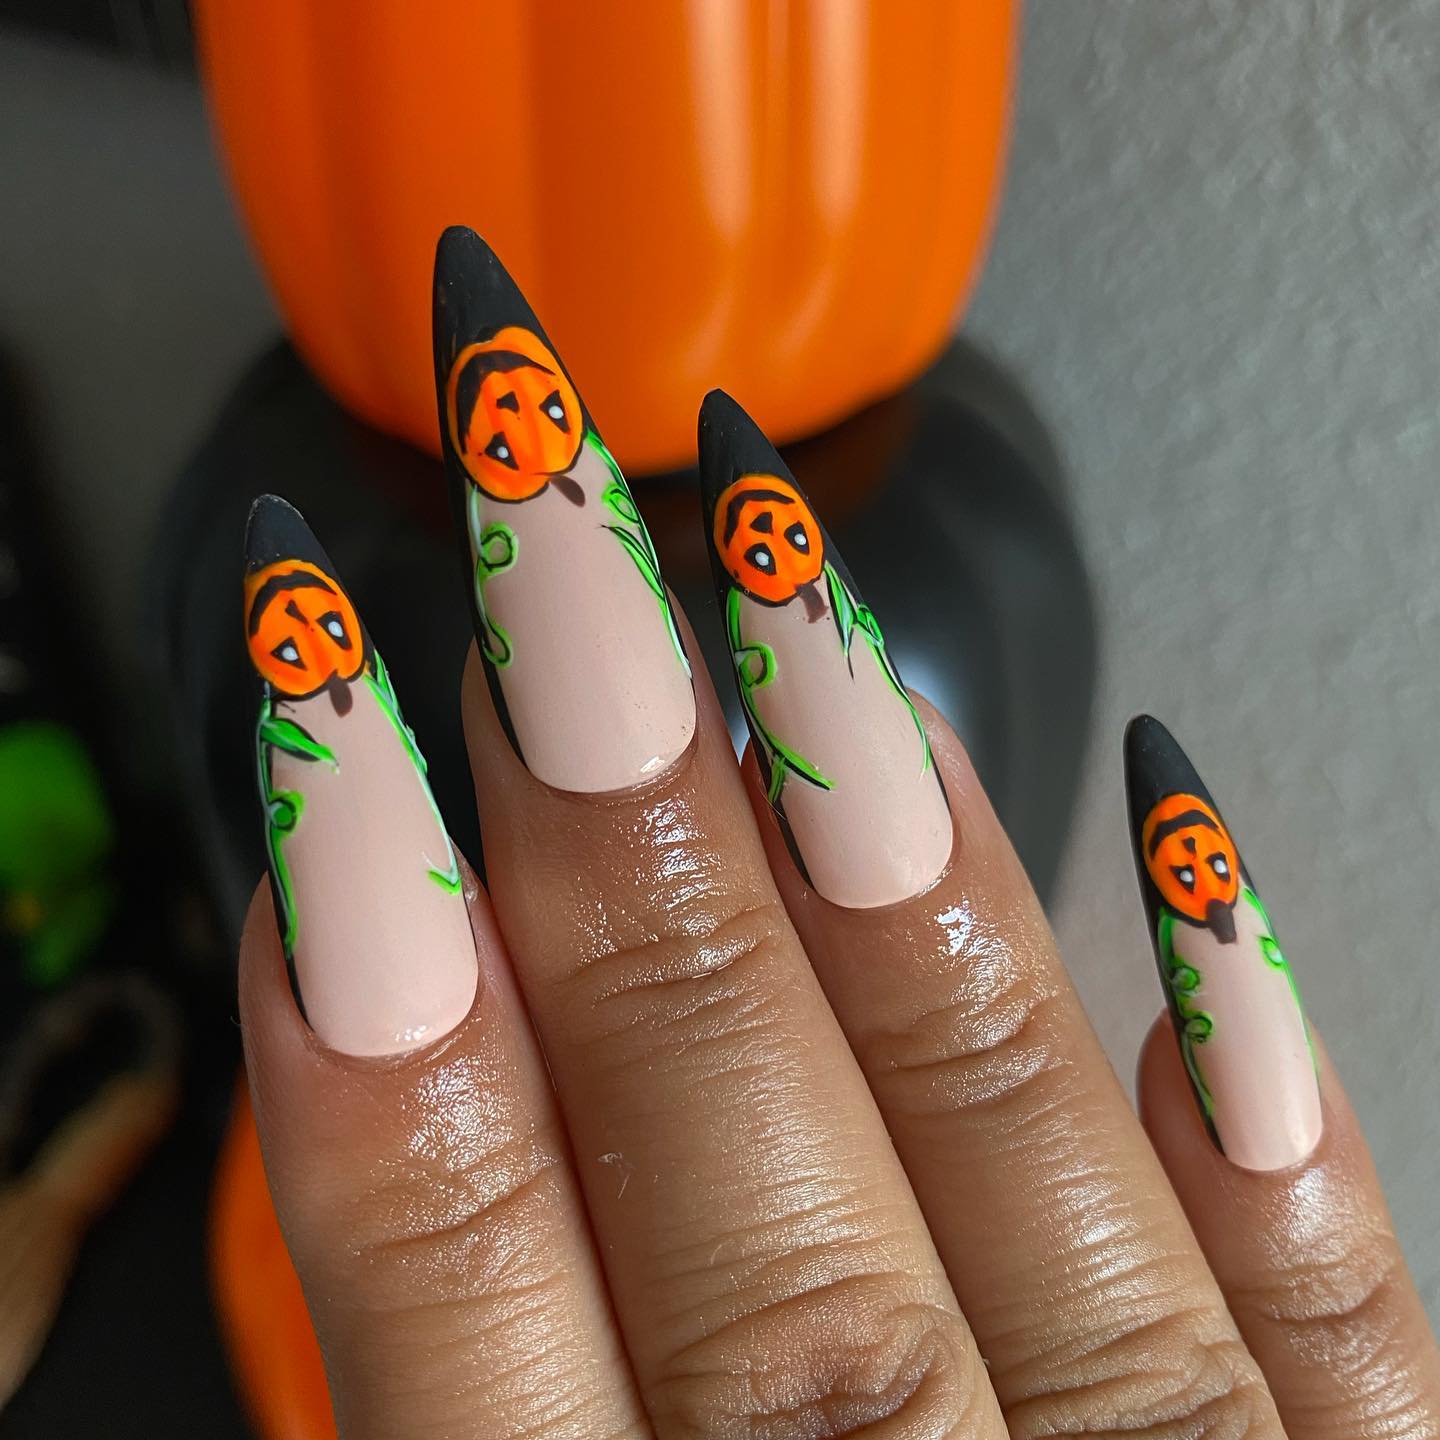 Kolejny przykład Halloweenowych paznokci migdałowych z malunkami w kształcie pomarańczowych dyń